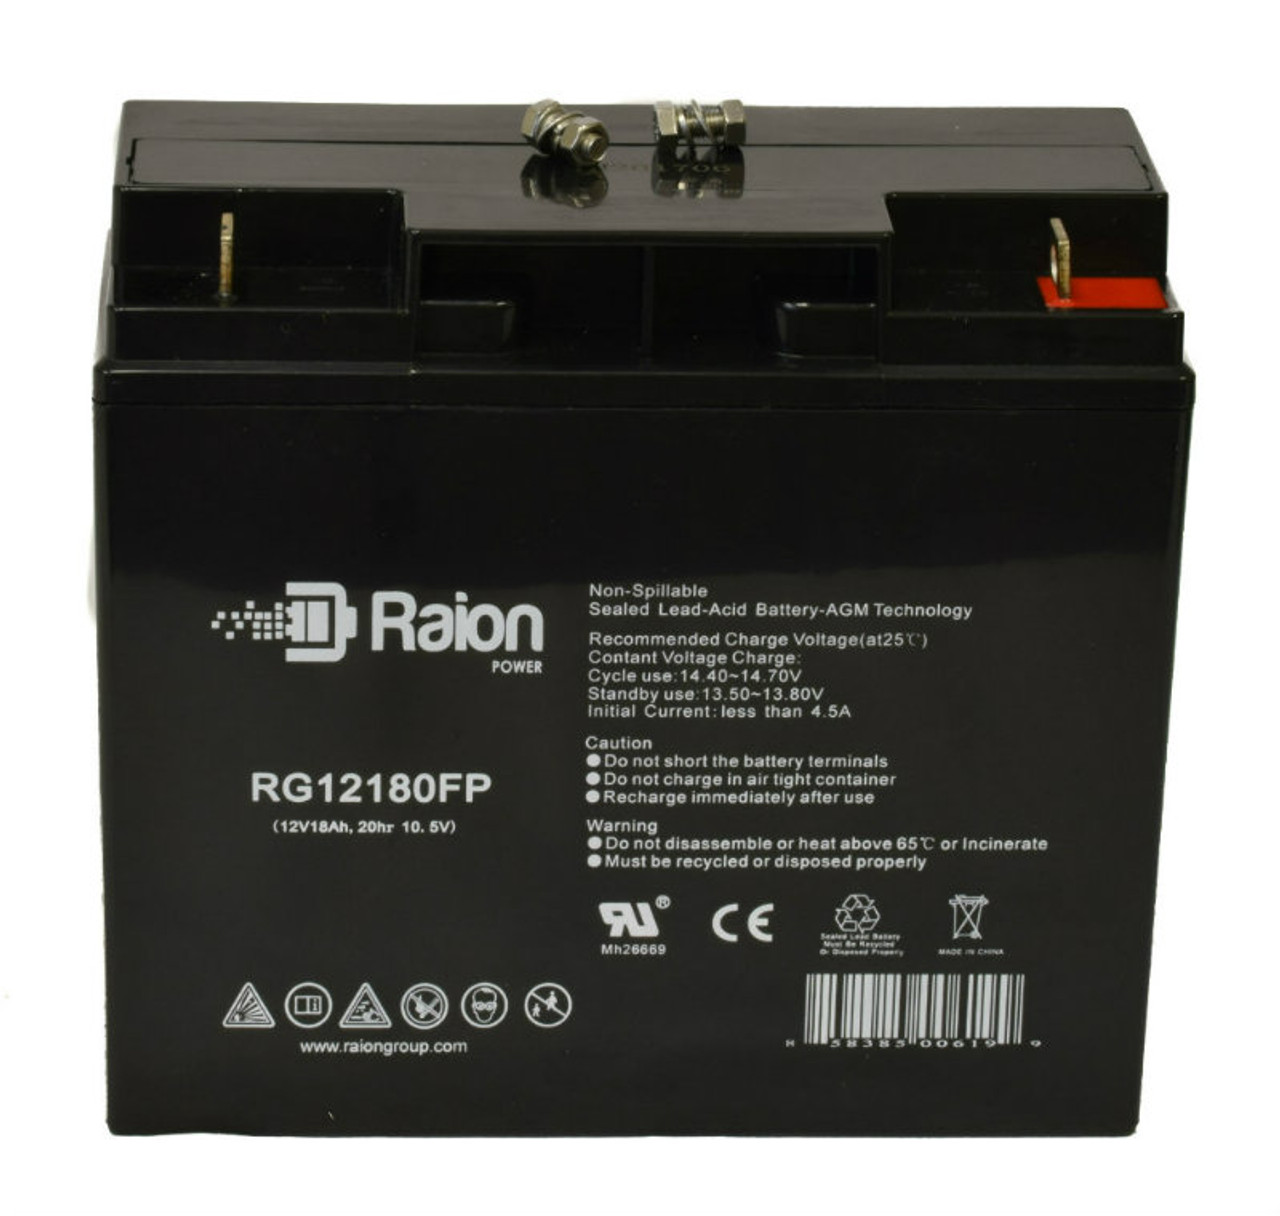 Raion Power RG12180FP 12V 18Ah Lead Acid Battery for Pride Mobility Go-Go Elite Traveller Plus 4 Wheel